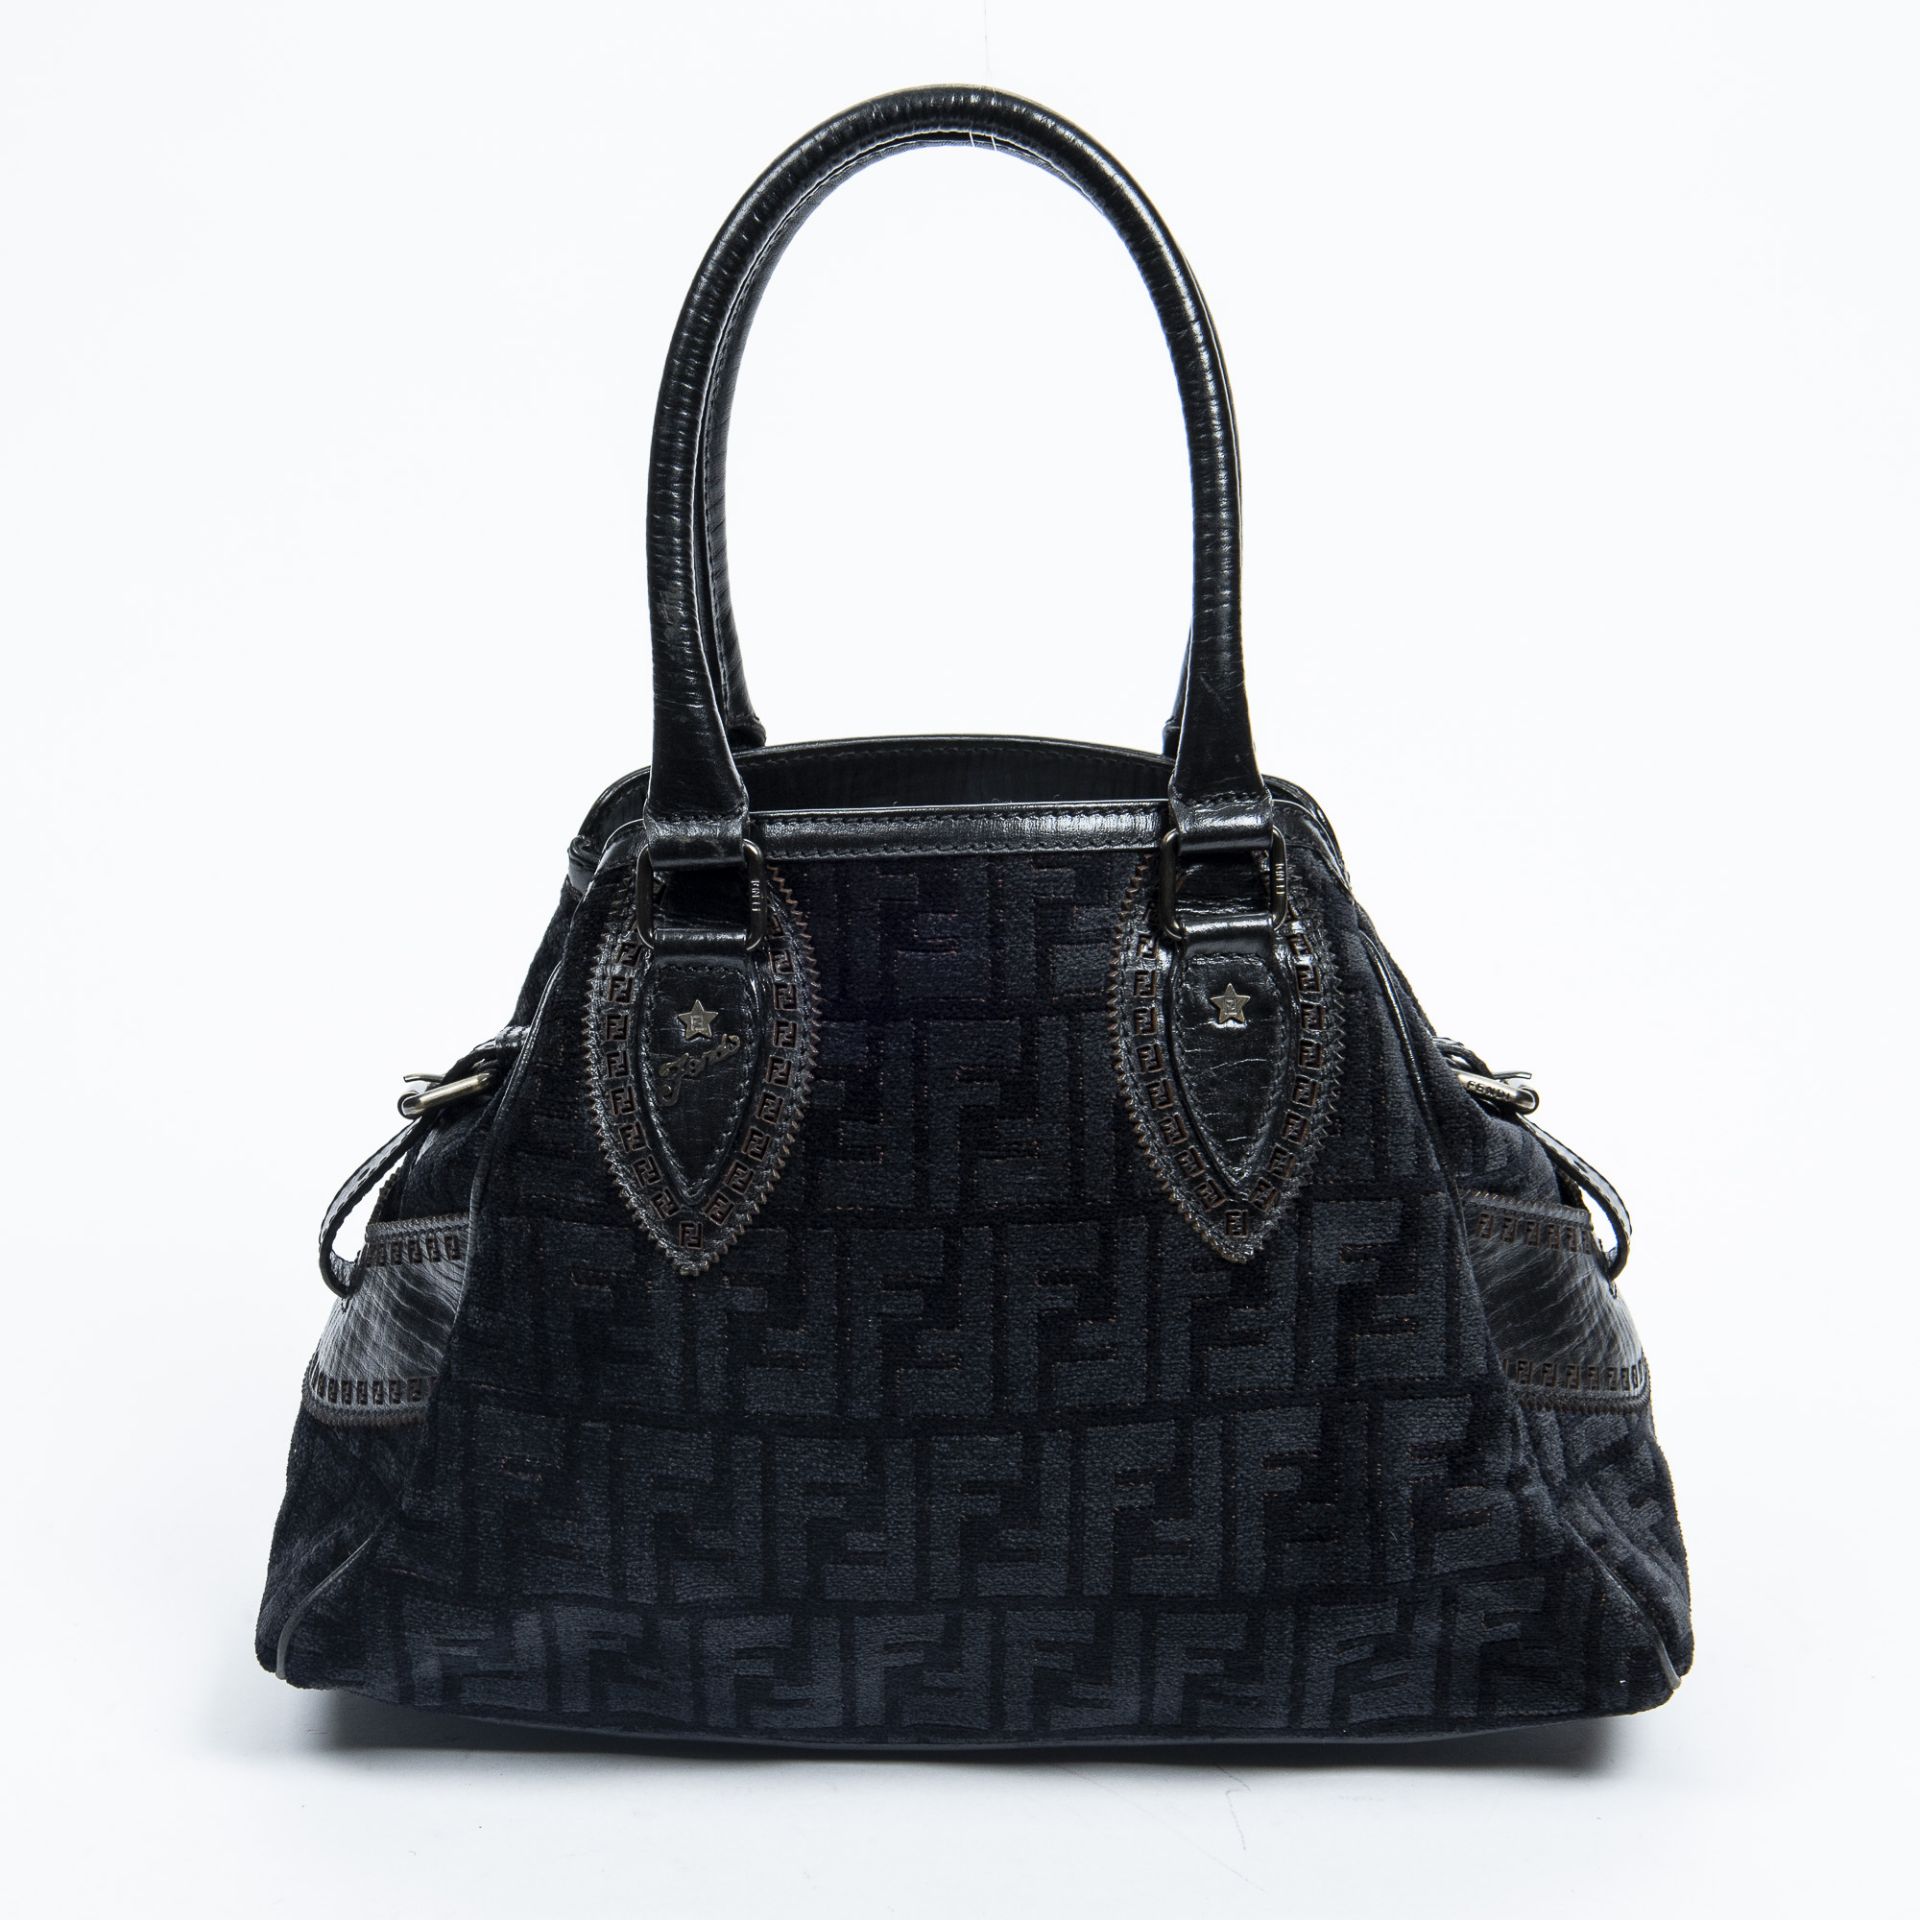 RRP £945.00 Lot To Contain 1 Fendi Canvas Du Jour Bag Handbag In Black - 31*23*13cm - A -